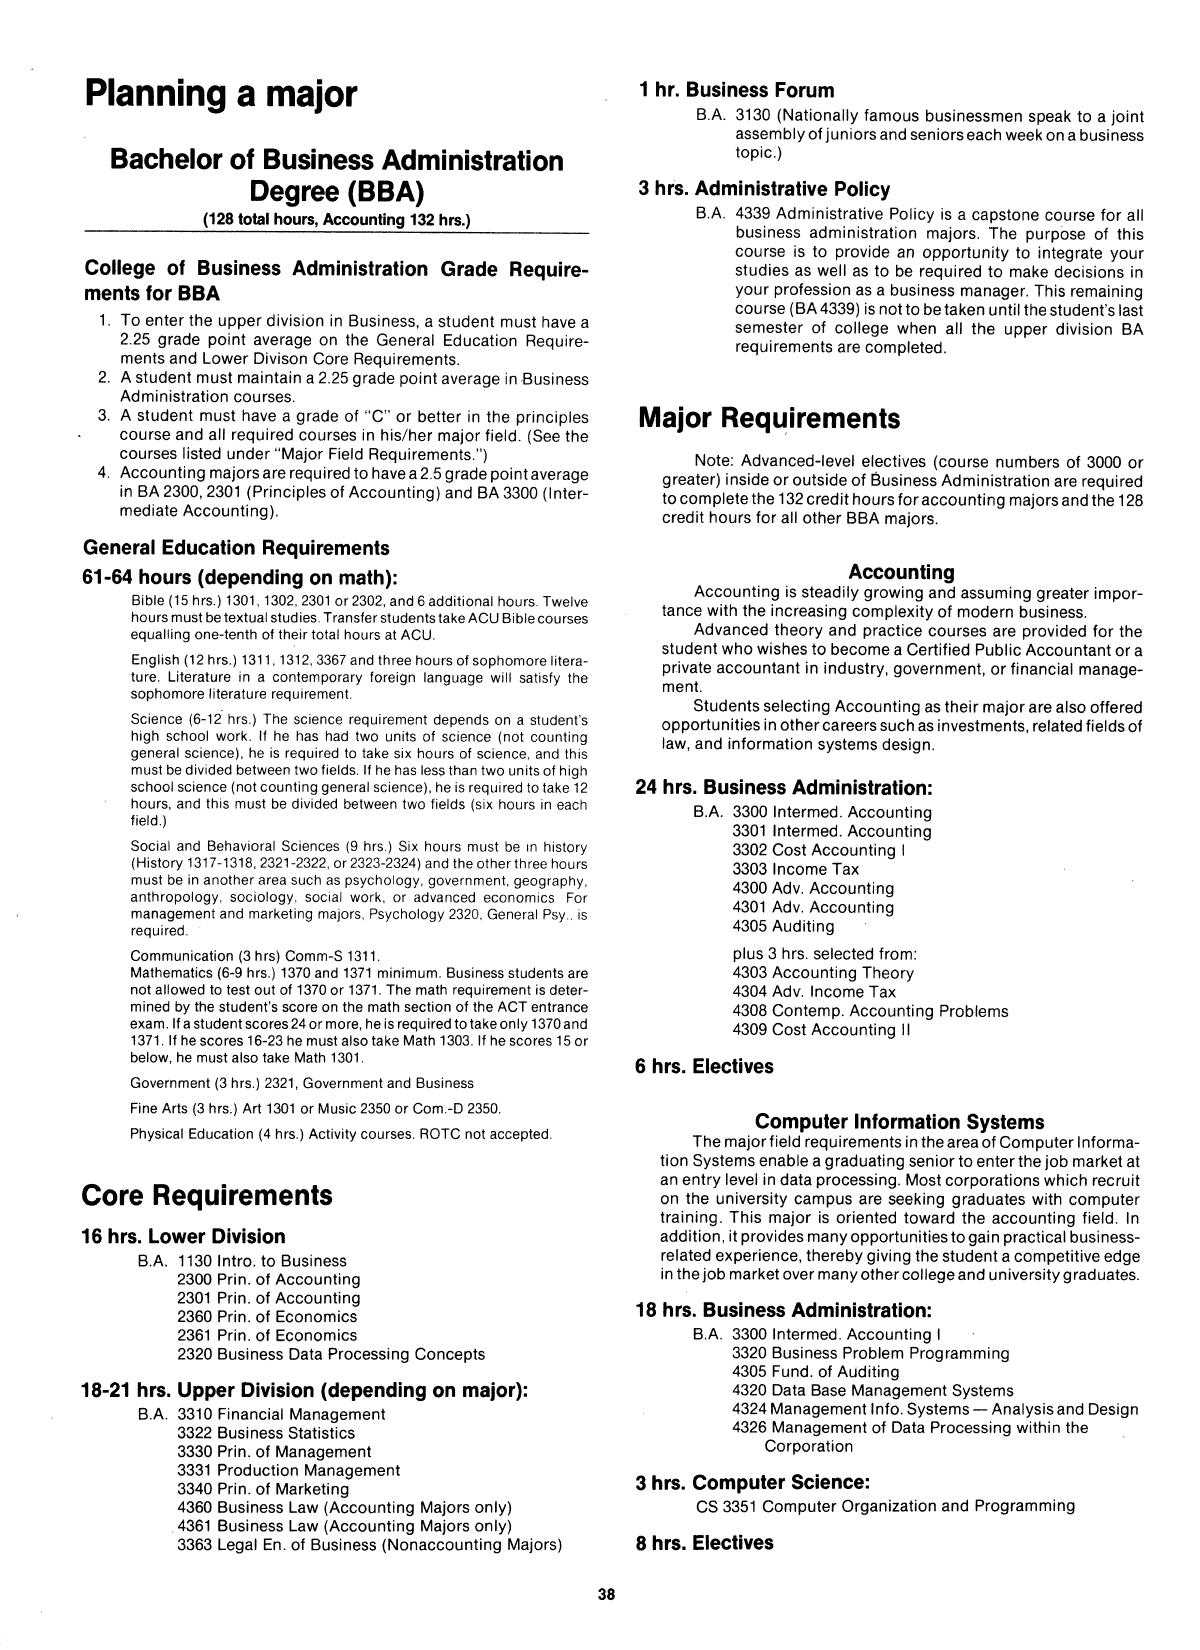 Catalog of Abilene Christian University, 1982-1983
                                                
                                                    38
                                                